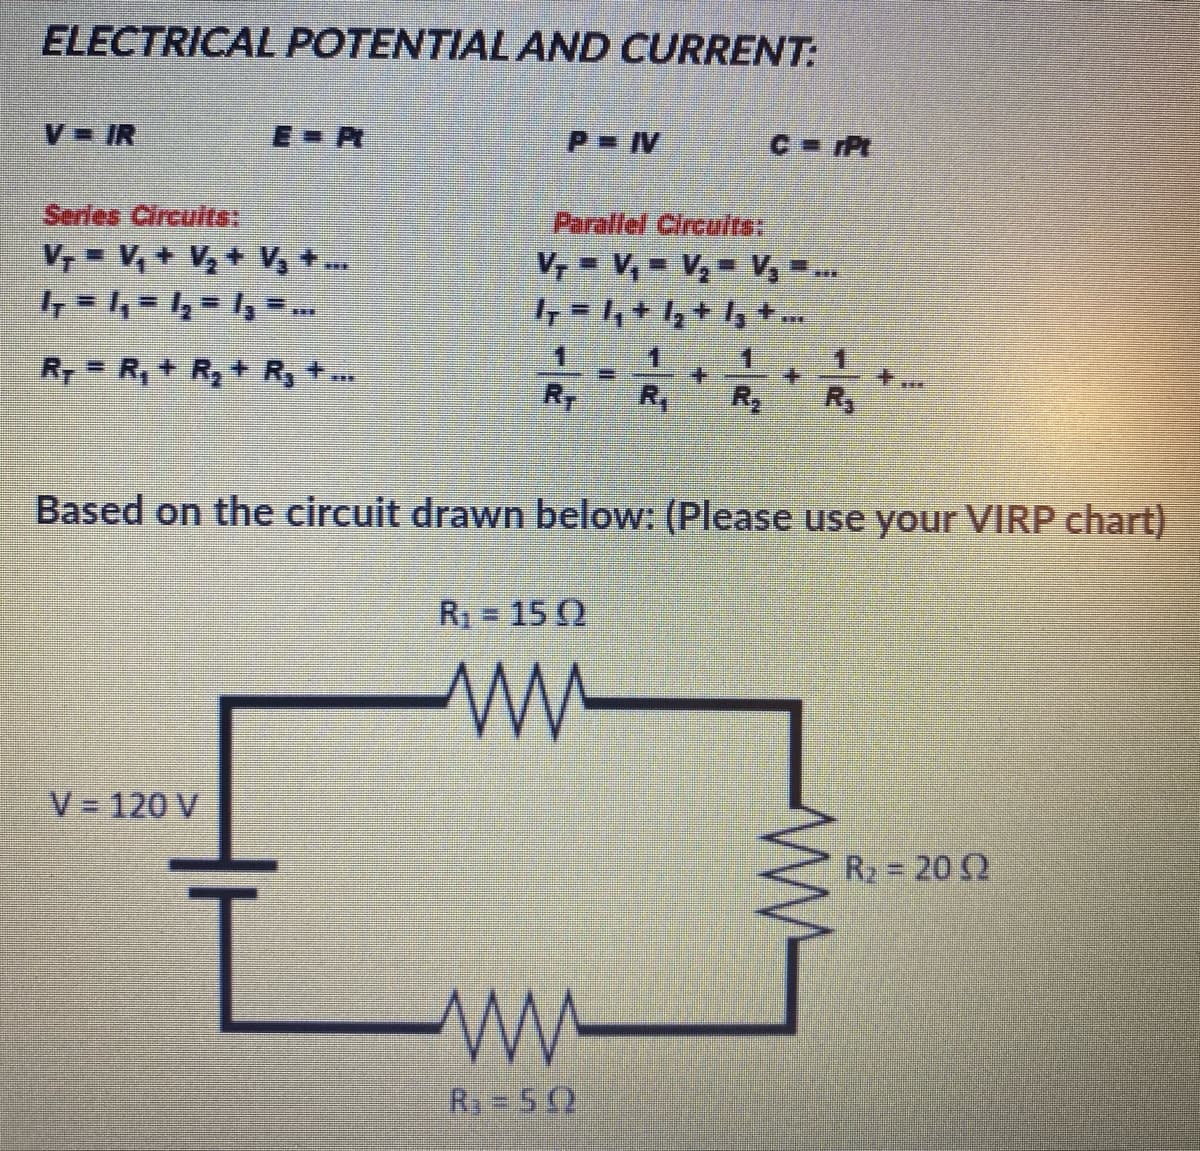 ELECTRICAL POTENTIAL AND CURRENT:
V IR
E-P
P IV
C Pt
Series Circuits:
Parallel Circuits:
V, = V, + V,+ V, +.
V, = V, = V, V, ..
1.
1.
R, = R, + R, + R, +.
RT
R,
R
Based on the circuit drawn below: (Please use your VIRP chart)
R = 15 Q
V = 120 V
R2 = 20 2
R3 5 2
W-
